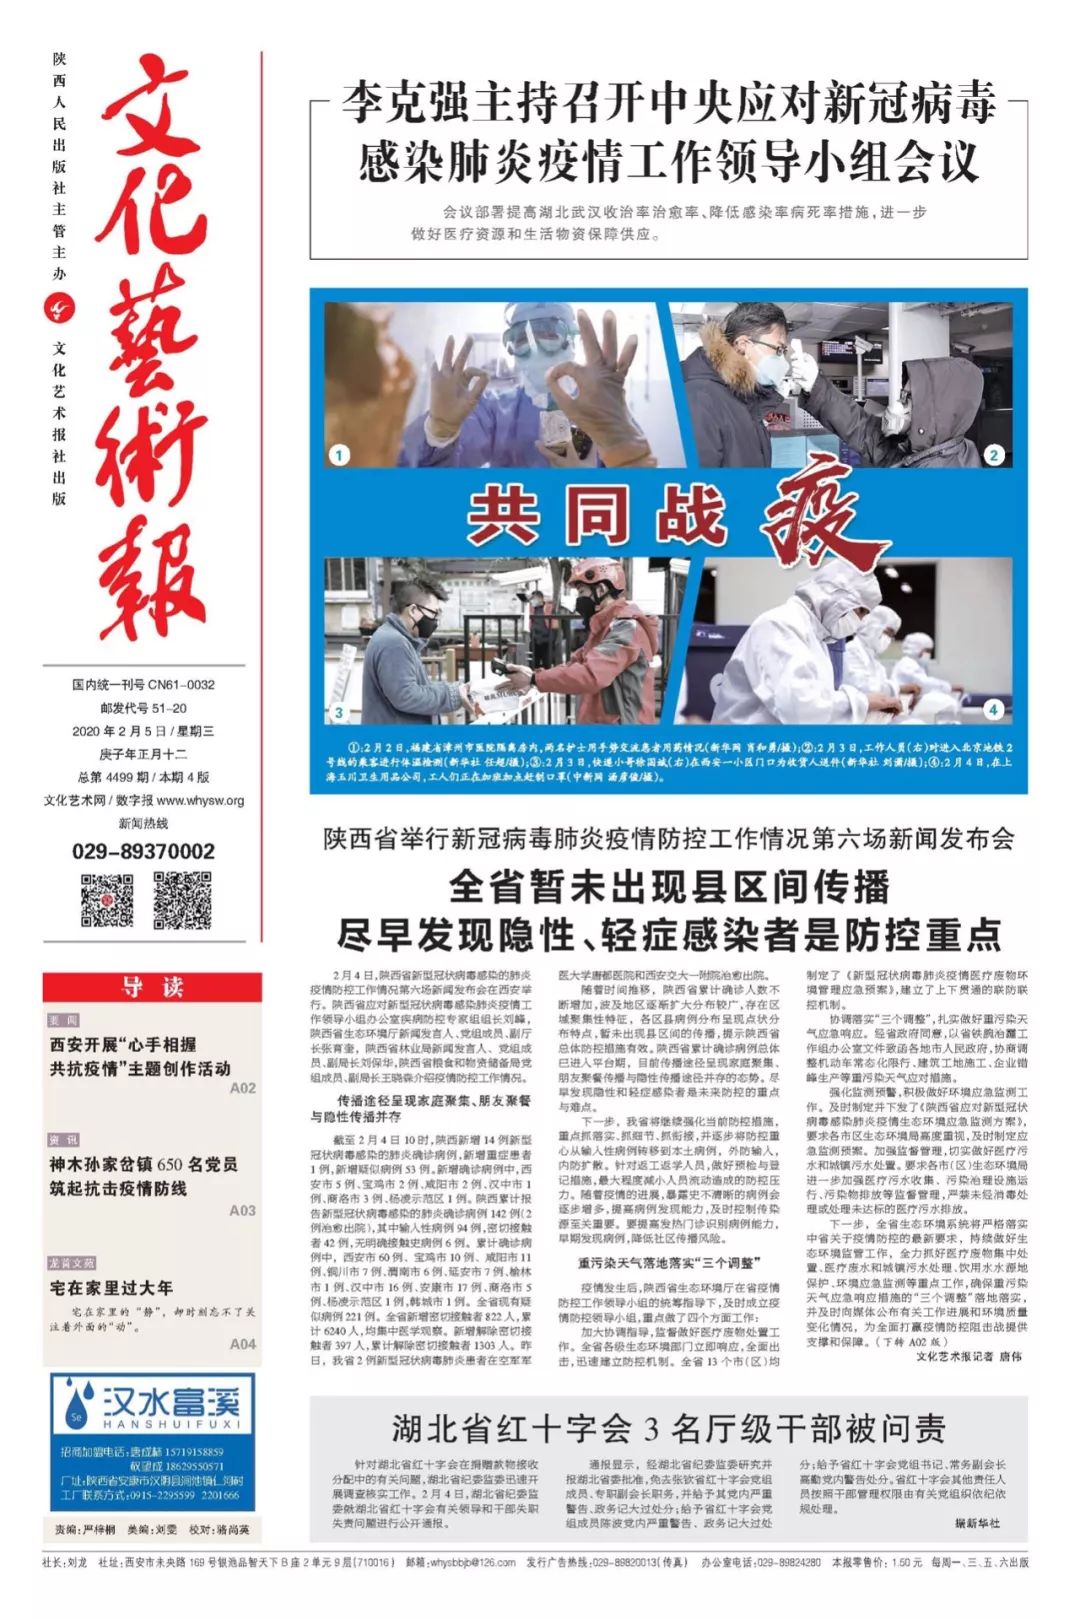 陕西省举行新冠病毒肺炎疫情防控工作情况第六场新闻发布会